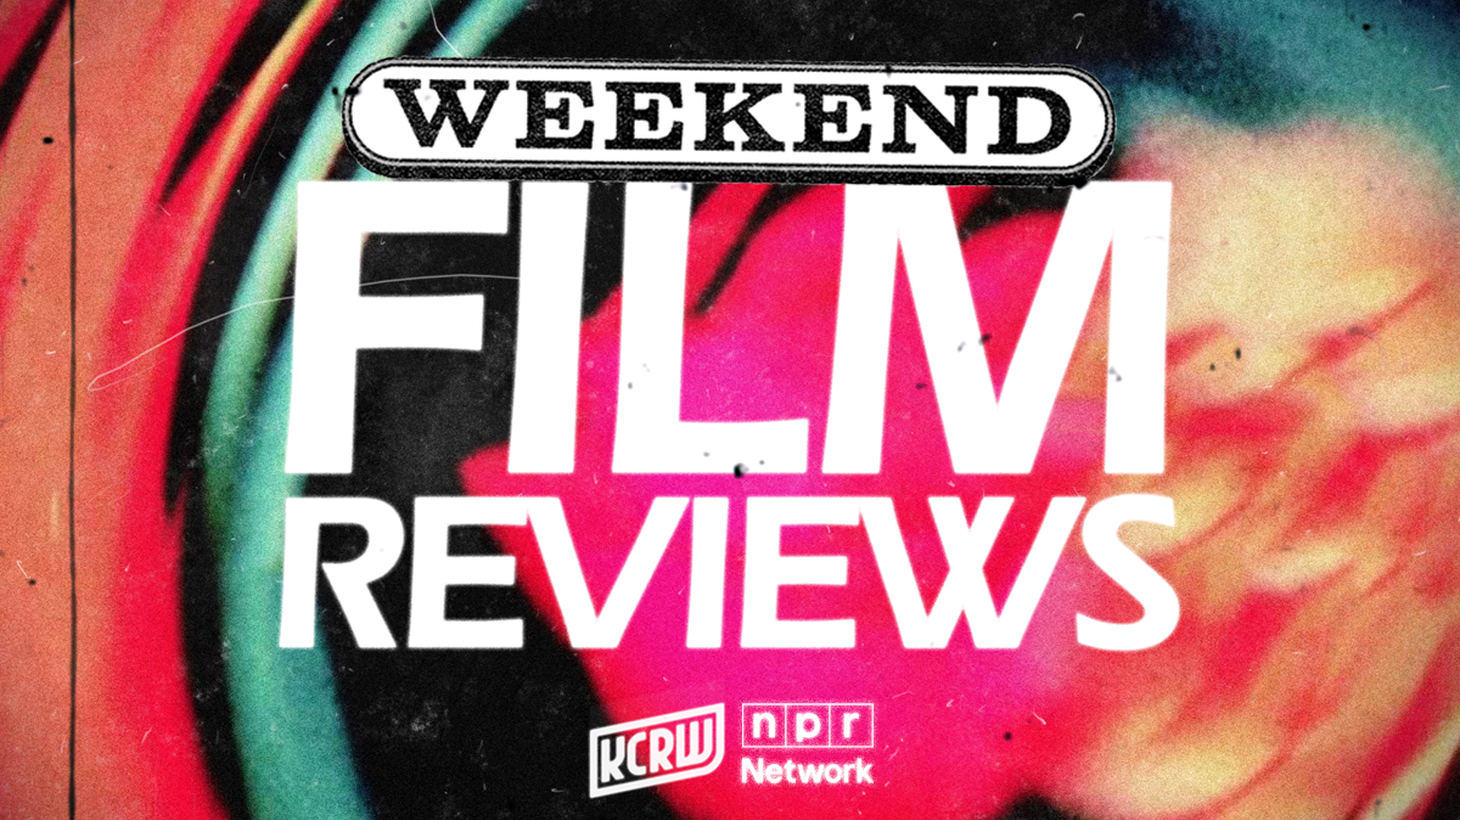 This week, Joe Morgenstern reviews Shopgirl and Kiss Kiss, Bang Bang.